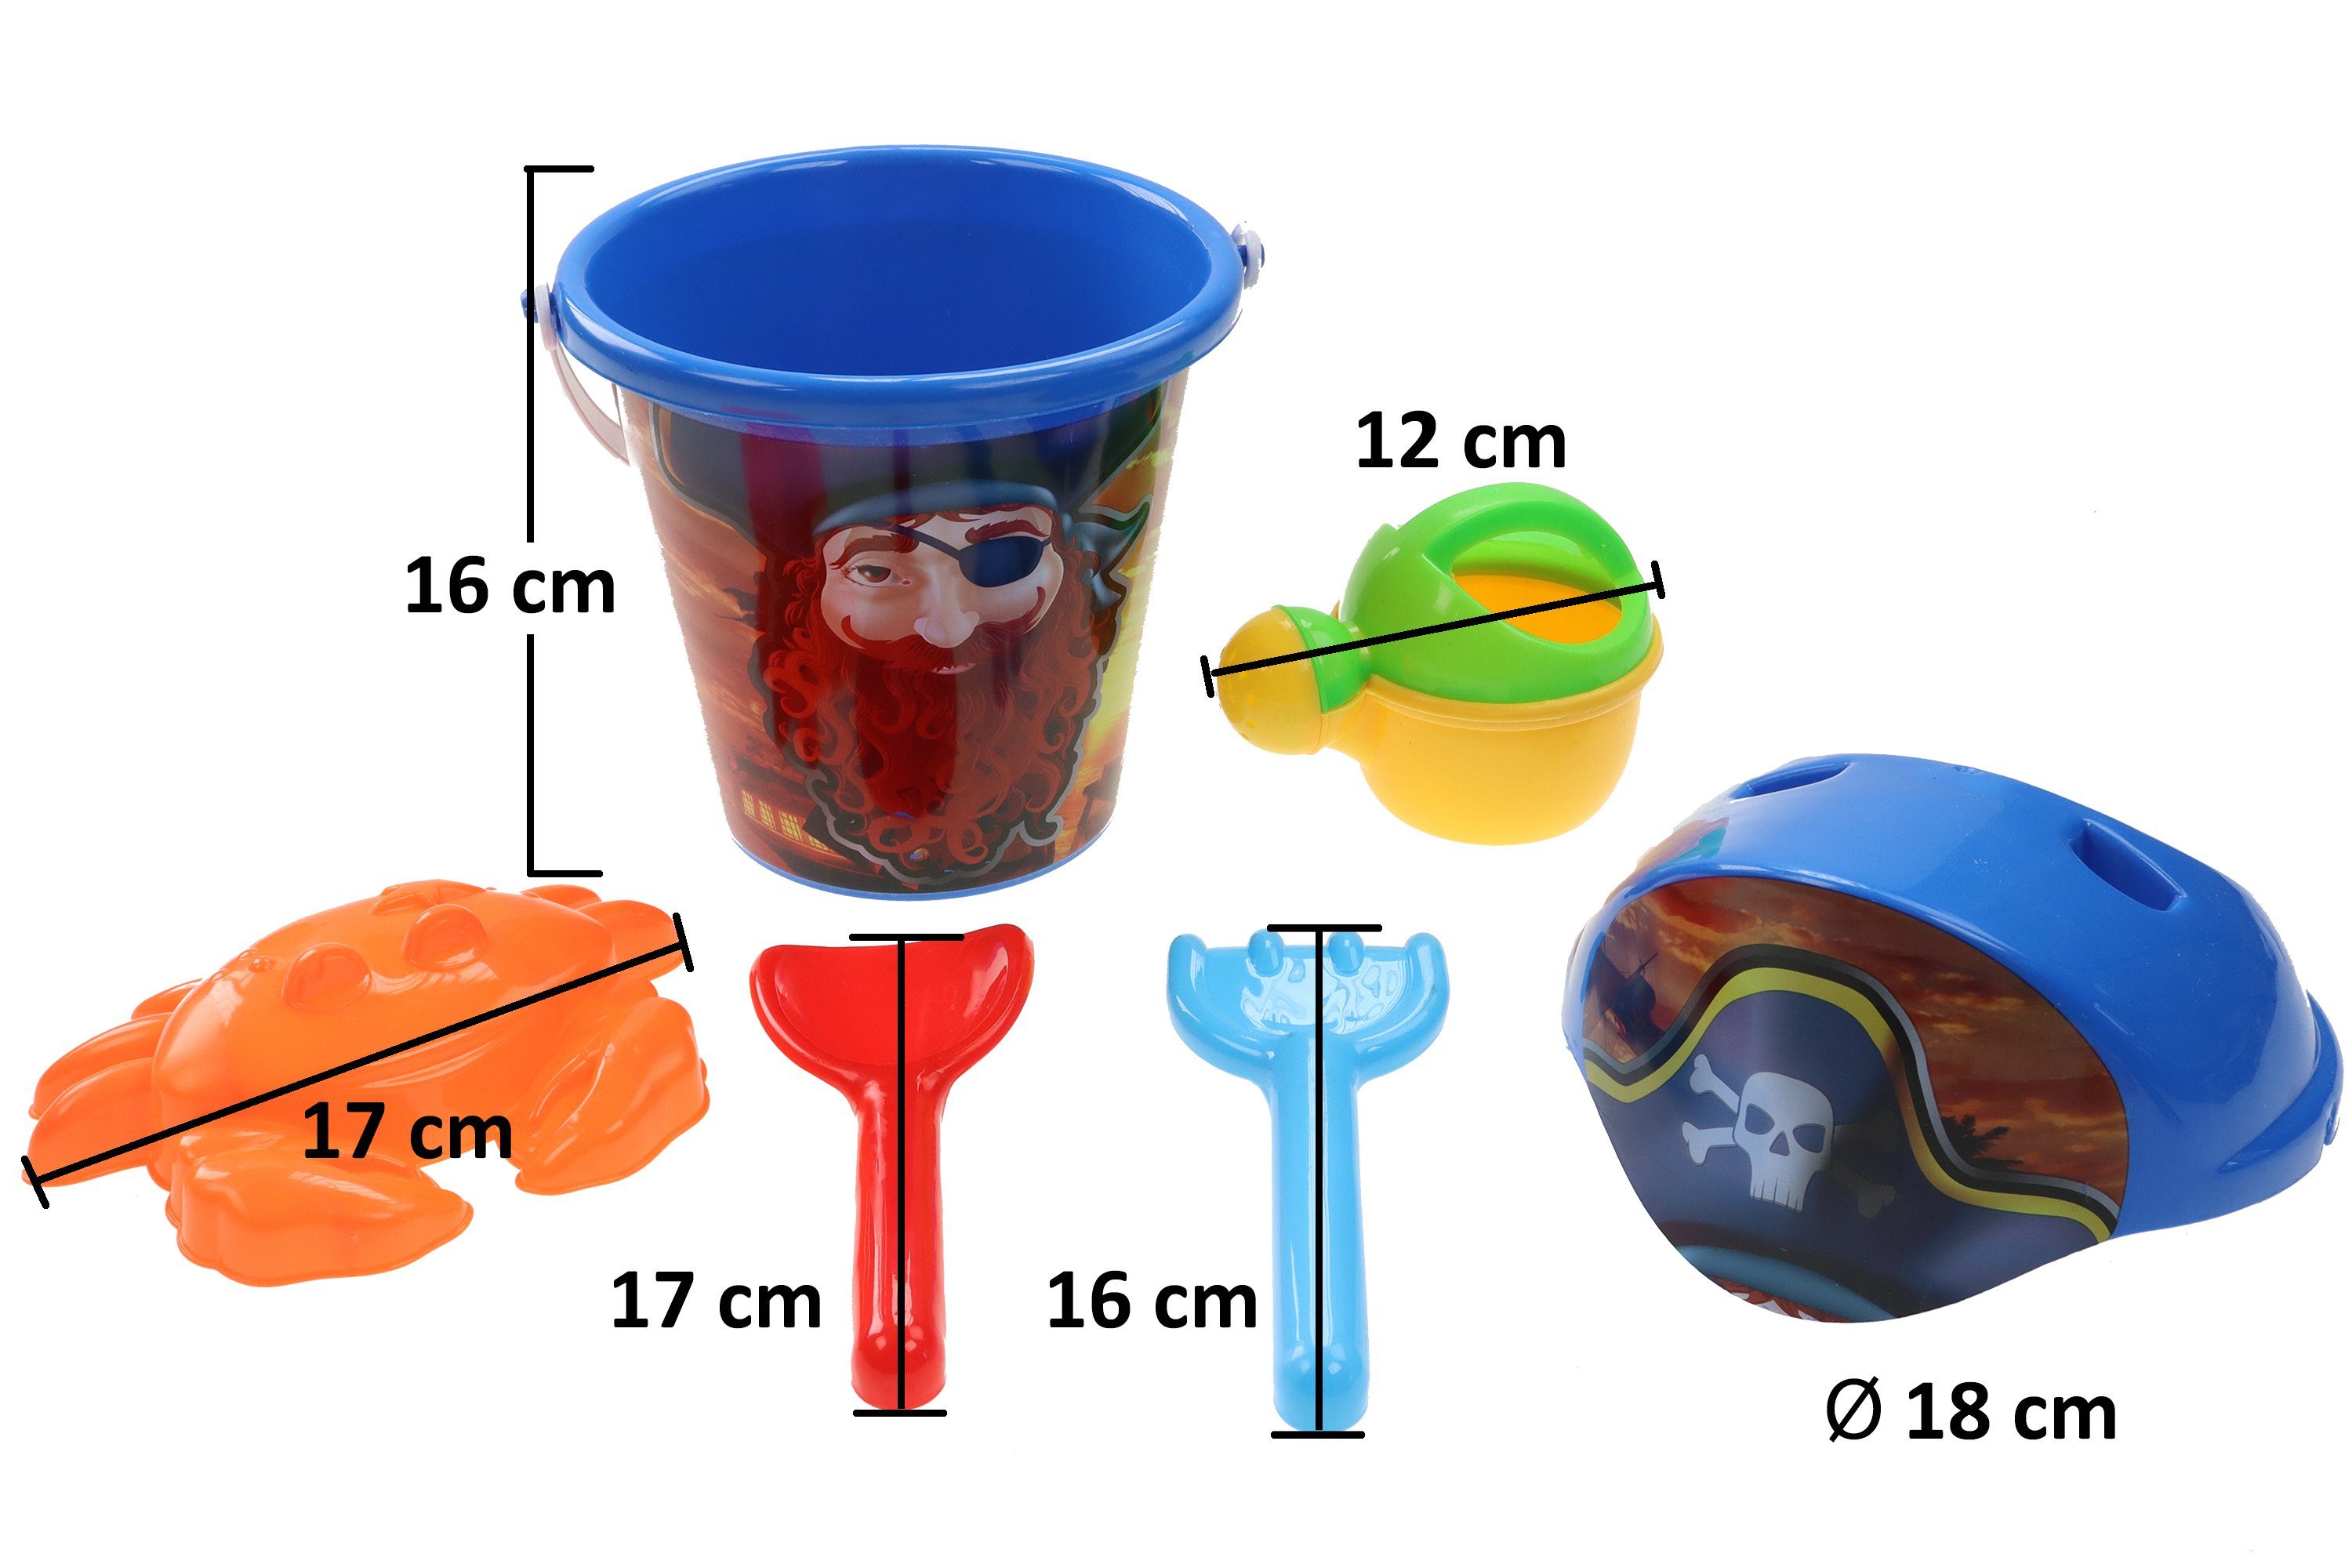 LG-Imports strandspielzeug Piraten mit Eimer 6-teilig mehrfarbig 18 cm 